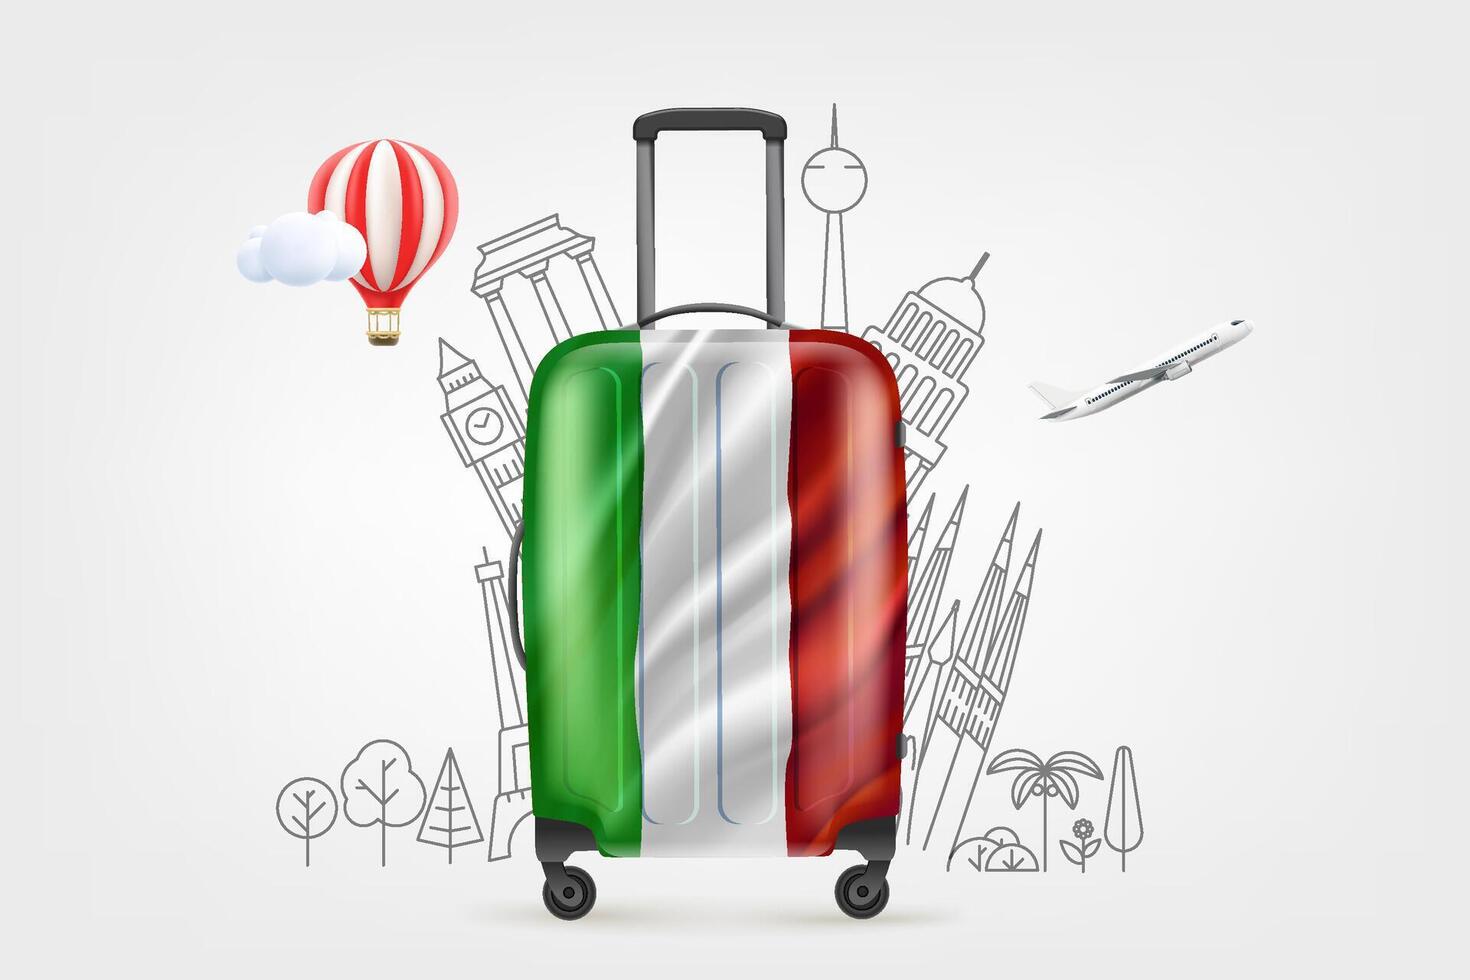 Plastik Reise Tasche mit Italienisch Flagge und berühmt Welt Sehenswürdigkeiten. 3d Vektor Illustration